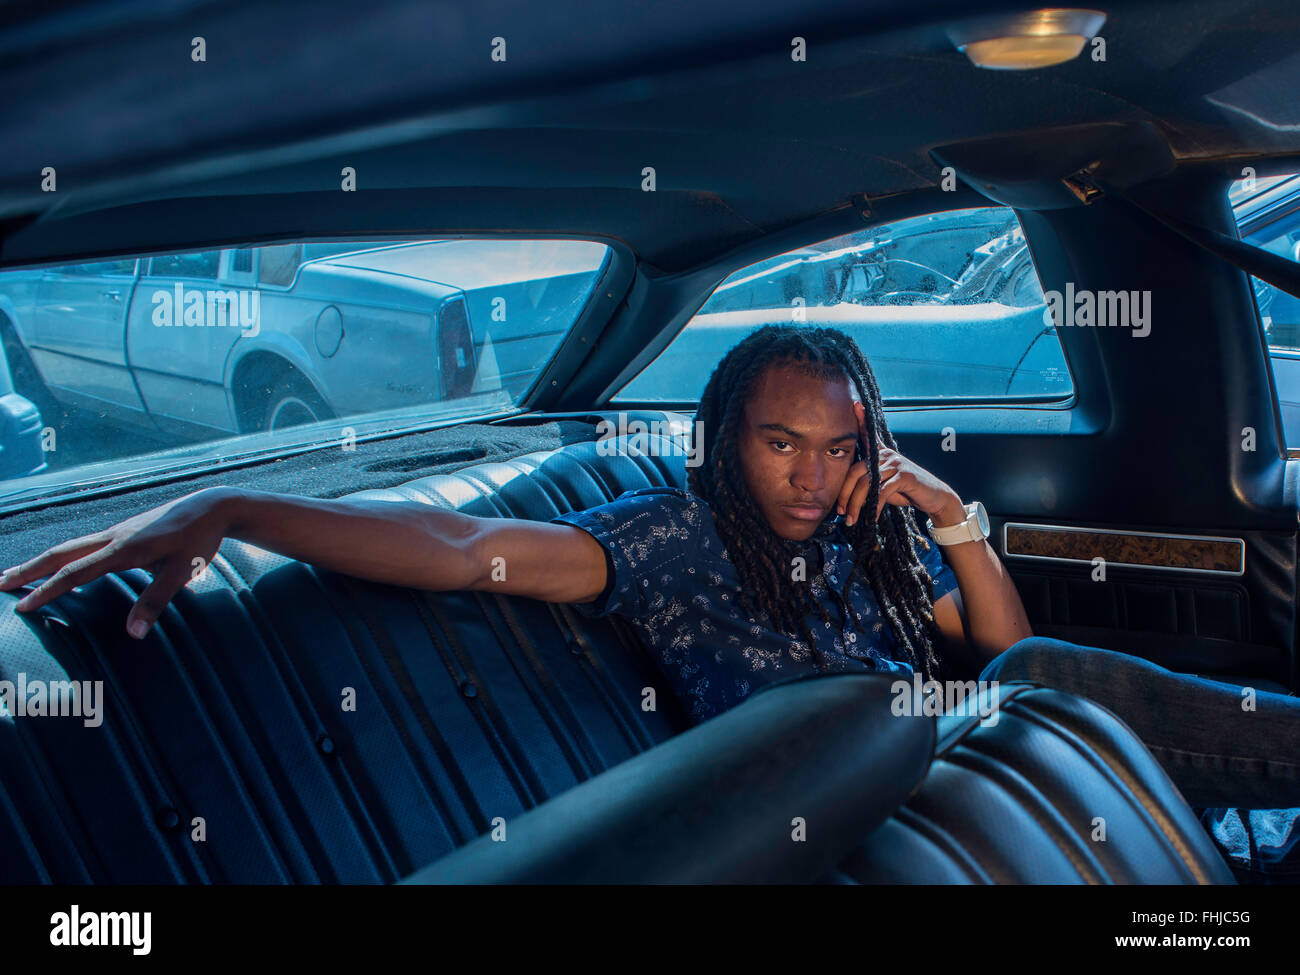 Un afro-americano di adolescente con dreadlocks si erge contro una parete di stagno/siede nel sedile posteriore di un Impala in a junkyard in NC. Foto Stock